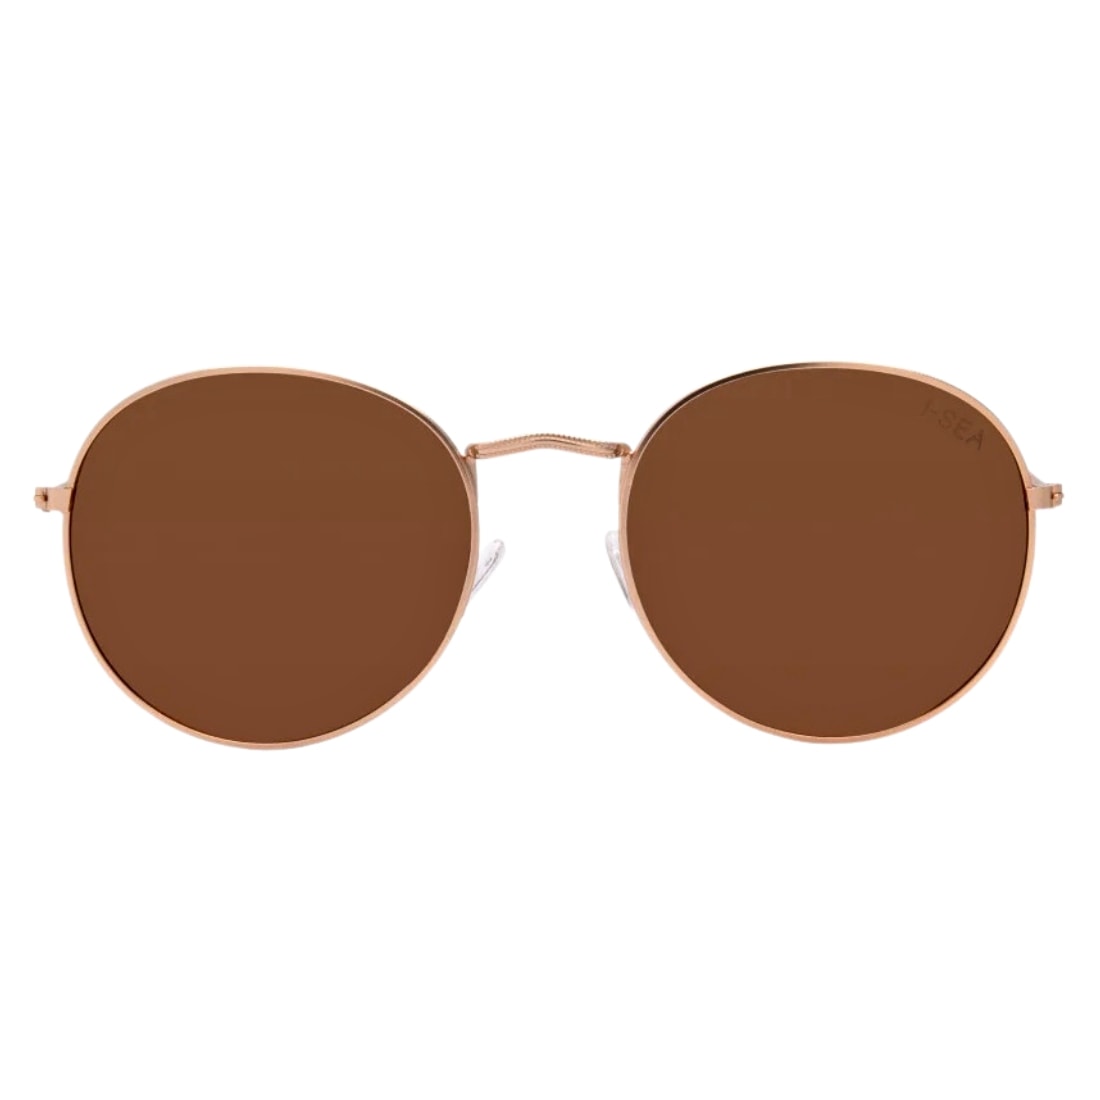 I-Sea London Polarised Sunglasses - Gold/Brown Polarized - Round Sunglasses by I-Sea